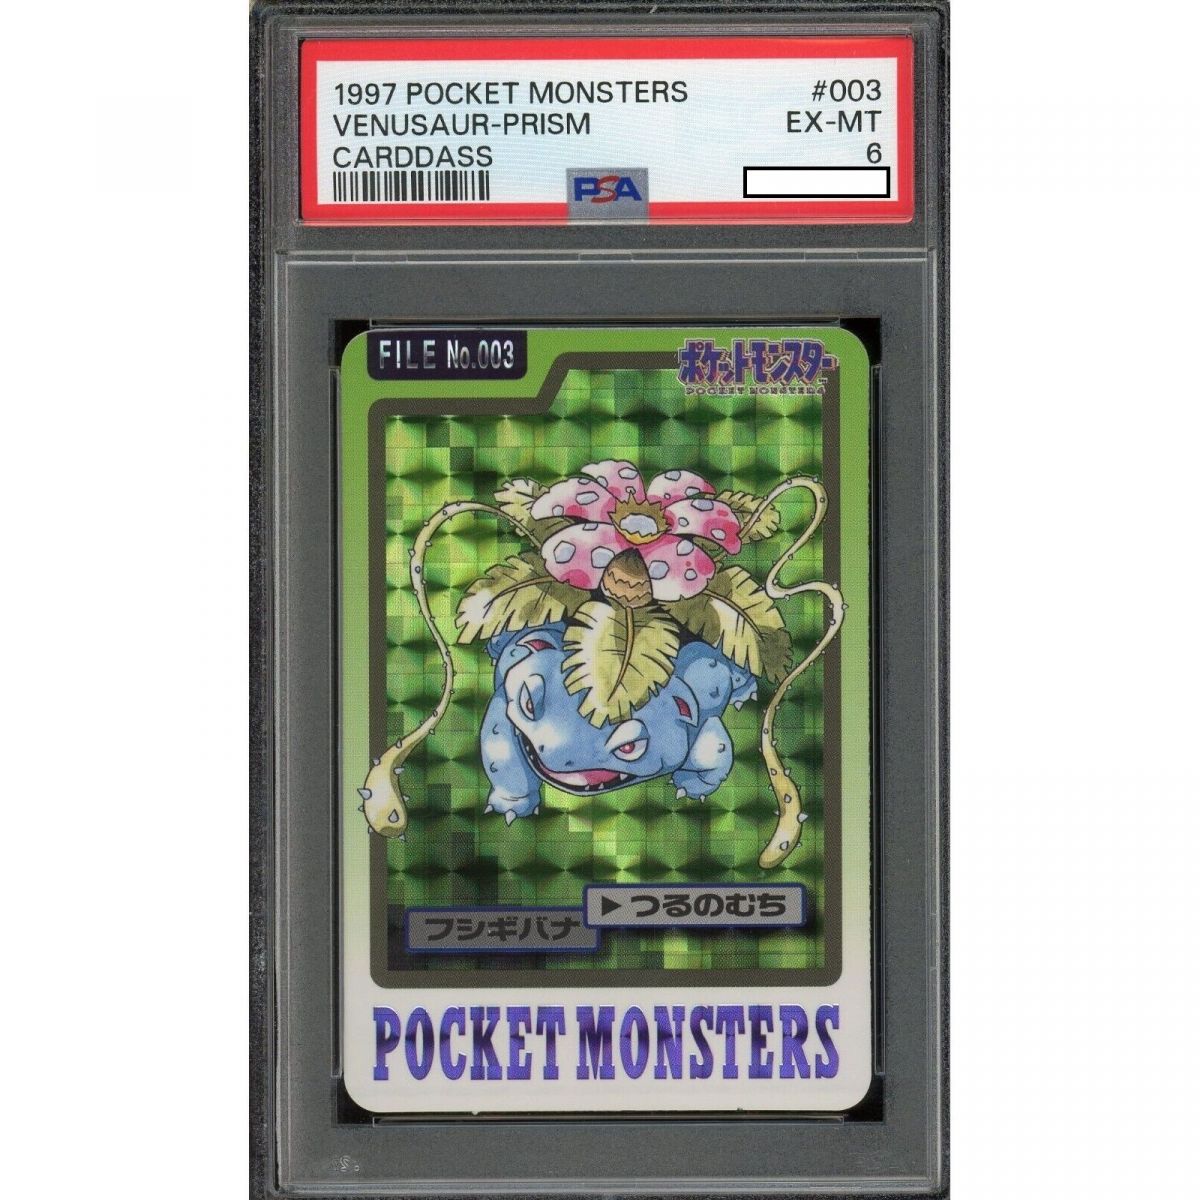 Item Pokémon - Graded Card - Venusaur 003 Prism Pocket Monster Carddass 1997 Japanese [PSA 6 - EX-MT]